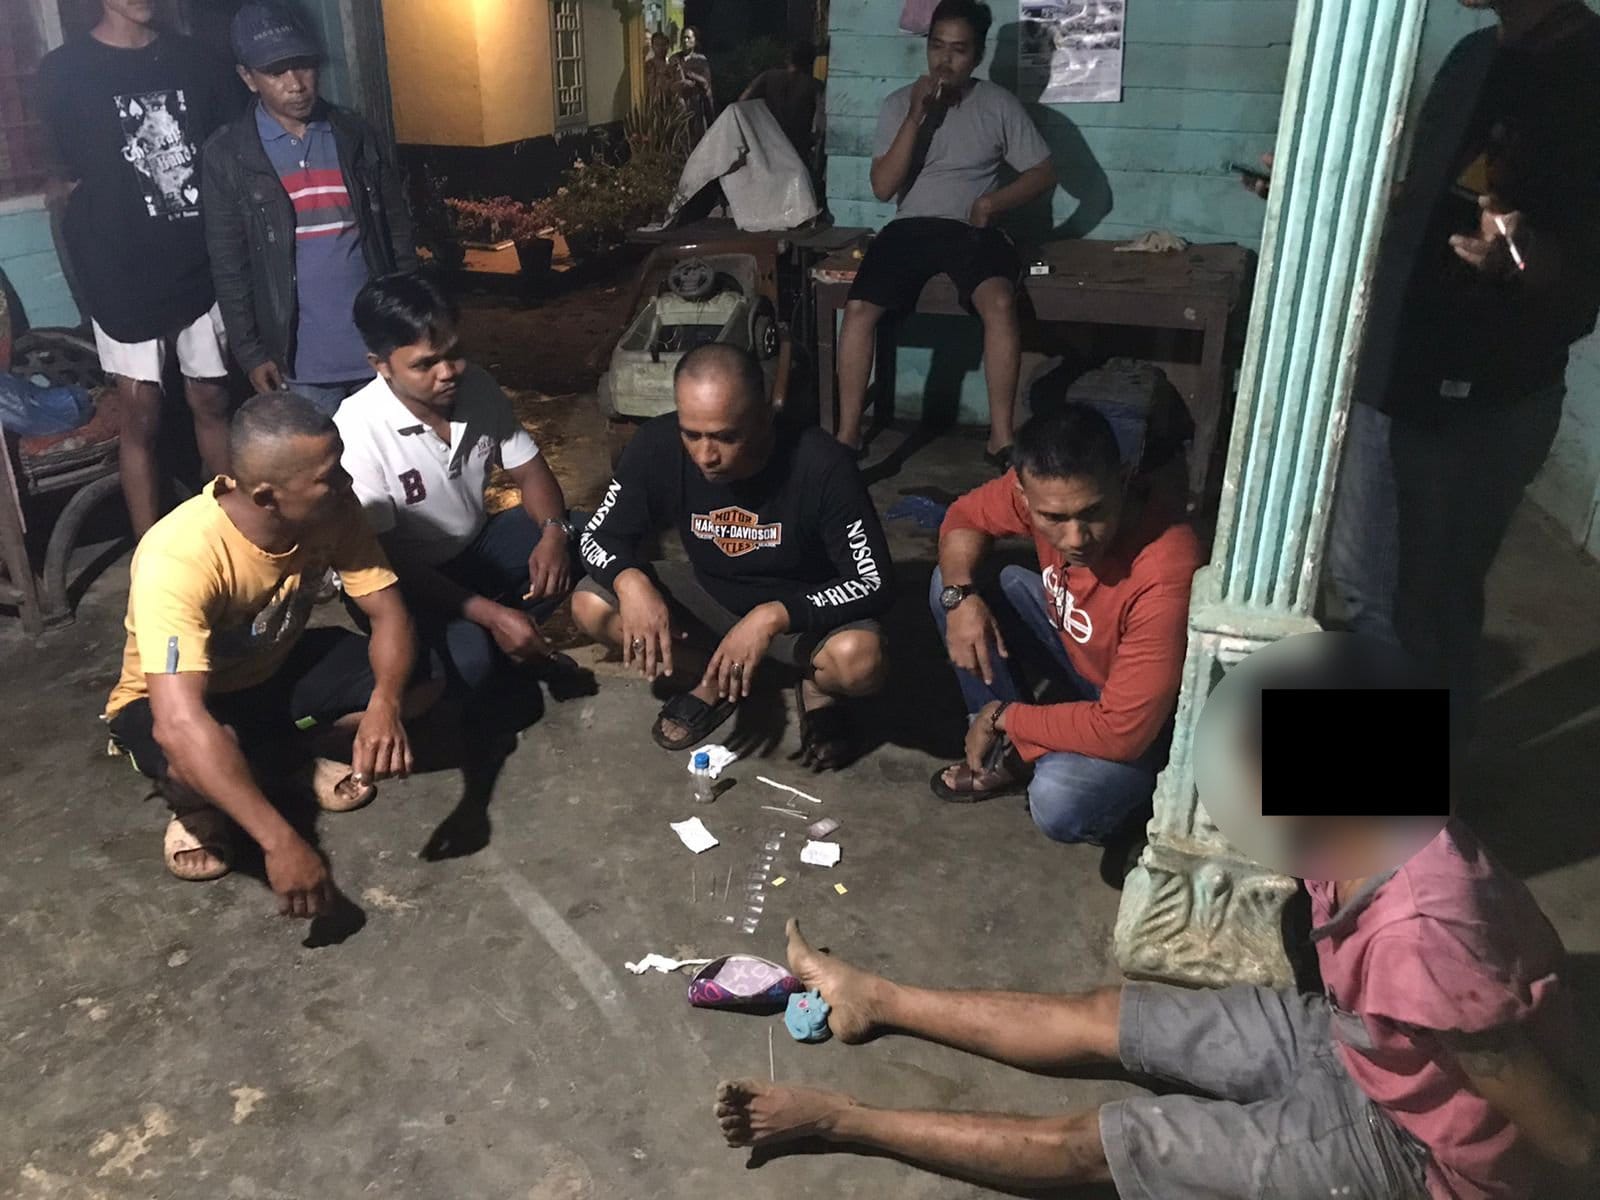 Operasi Narkoba di Dharmasraya, Satresnarkoba Polres Amankan Satu Pelaku dan Barang Bukti Sabu